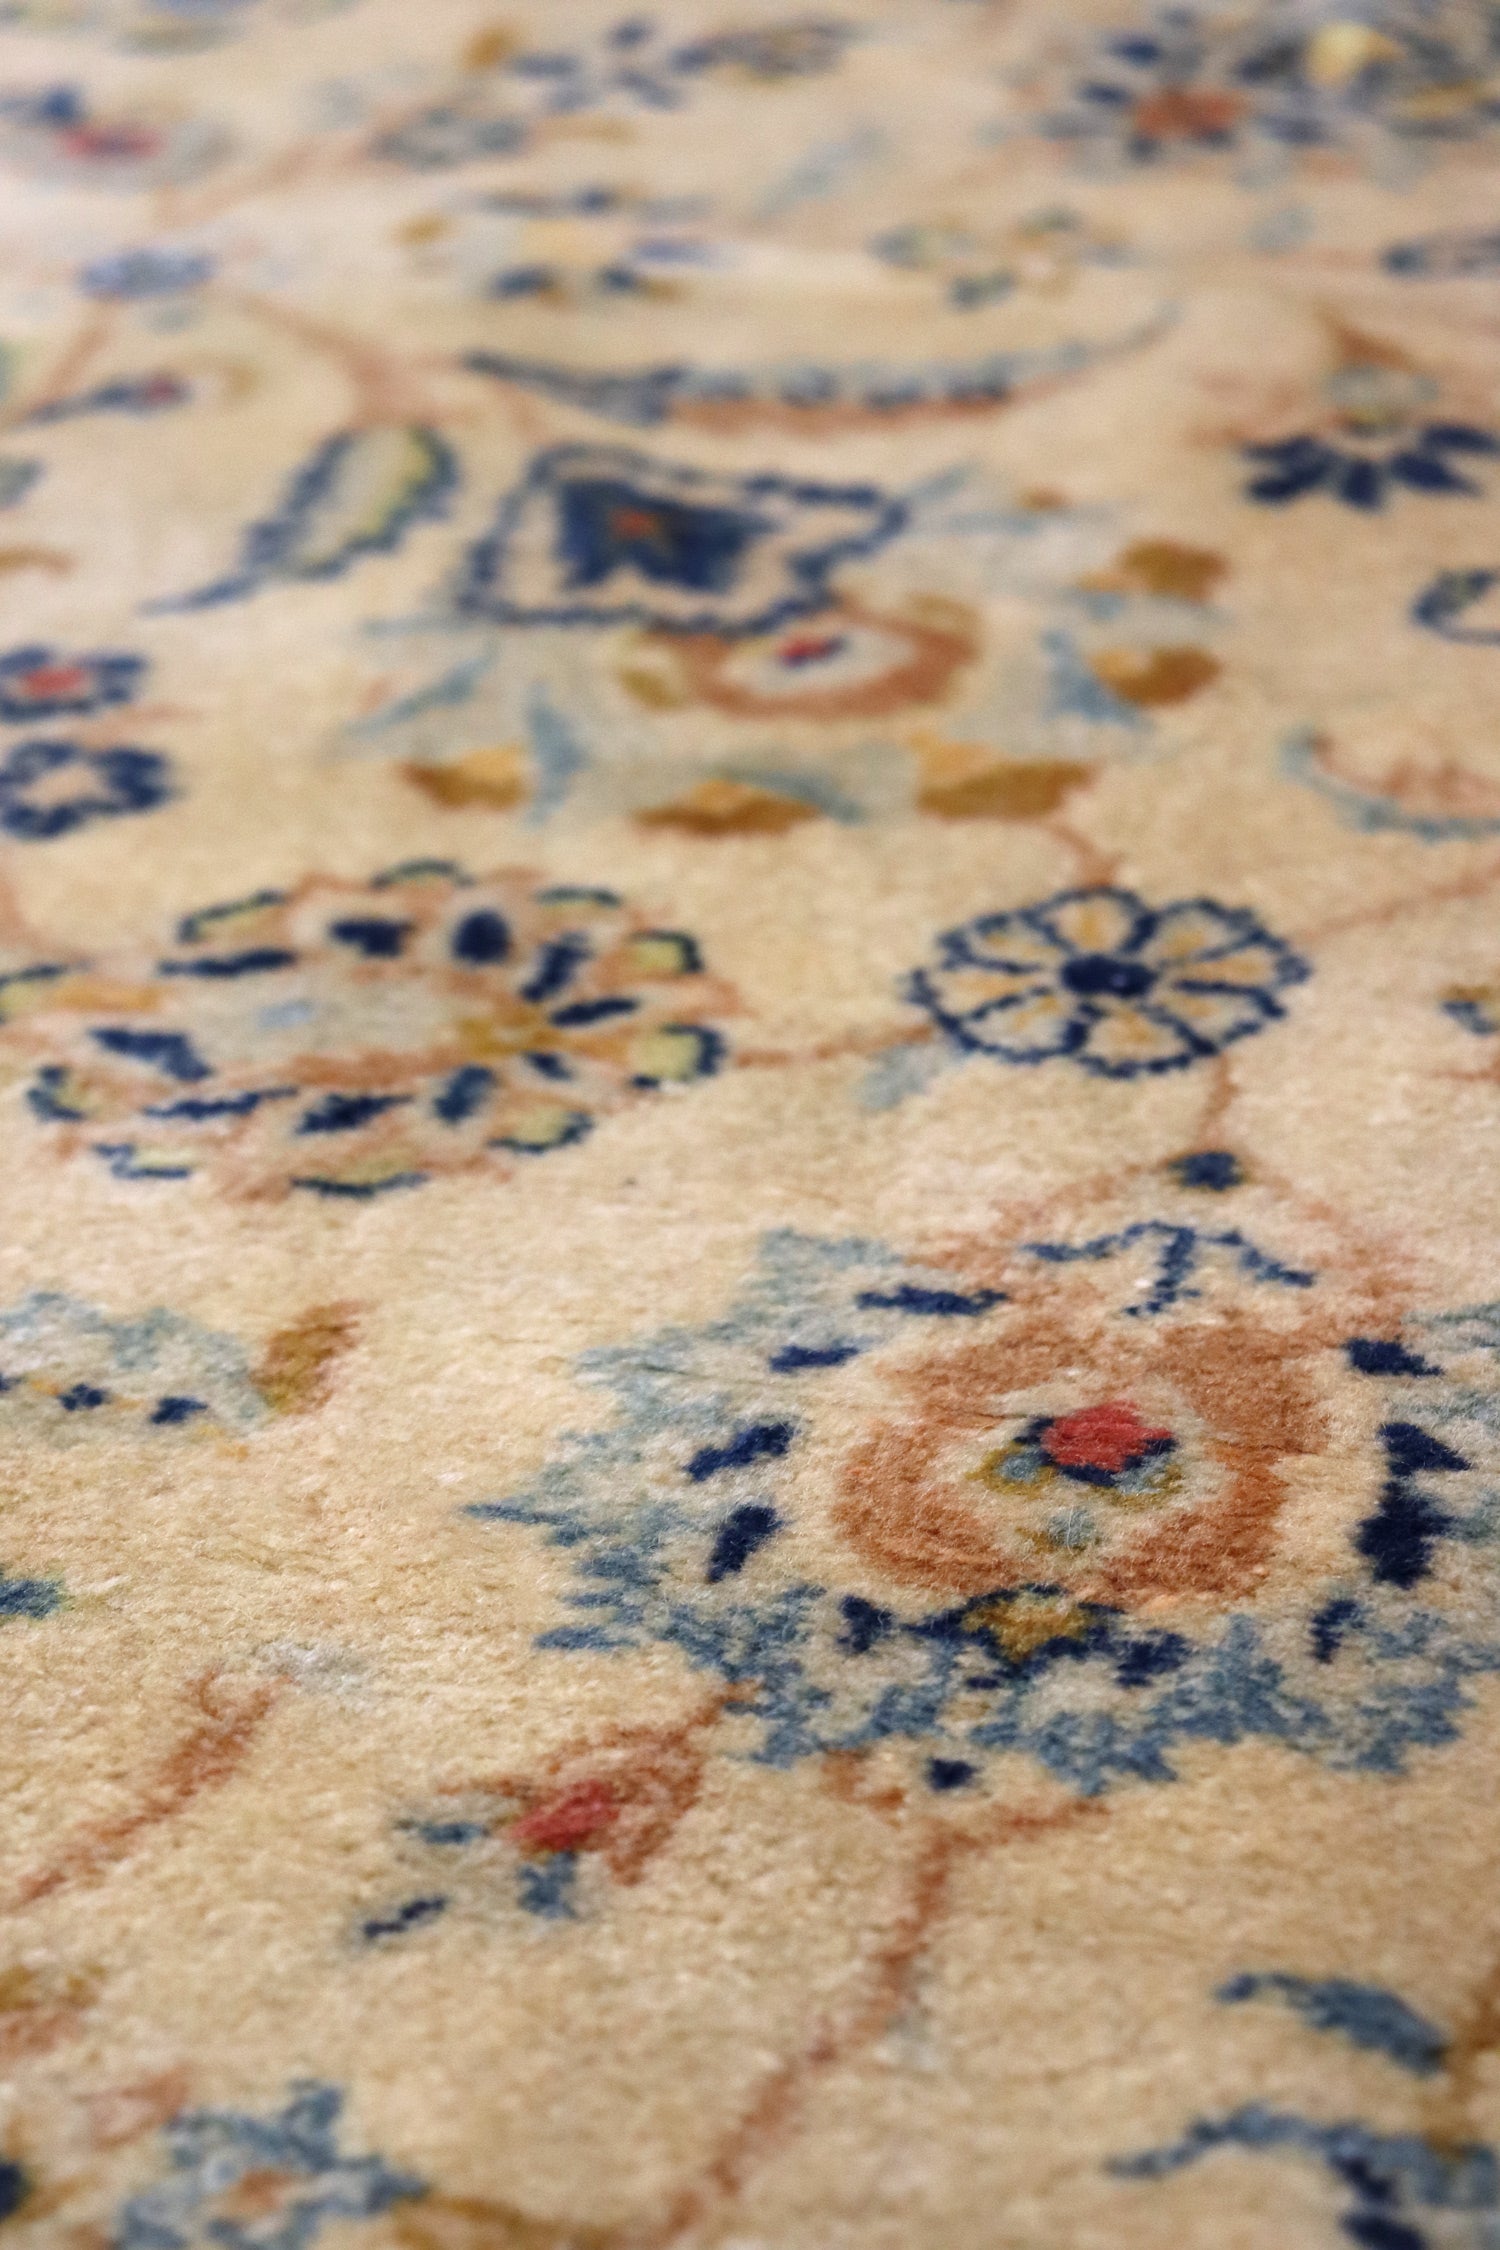 Antique Kashan Handwoven Traditional Rug, J65489